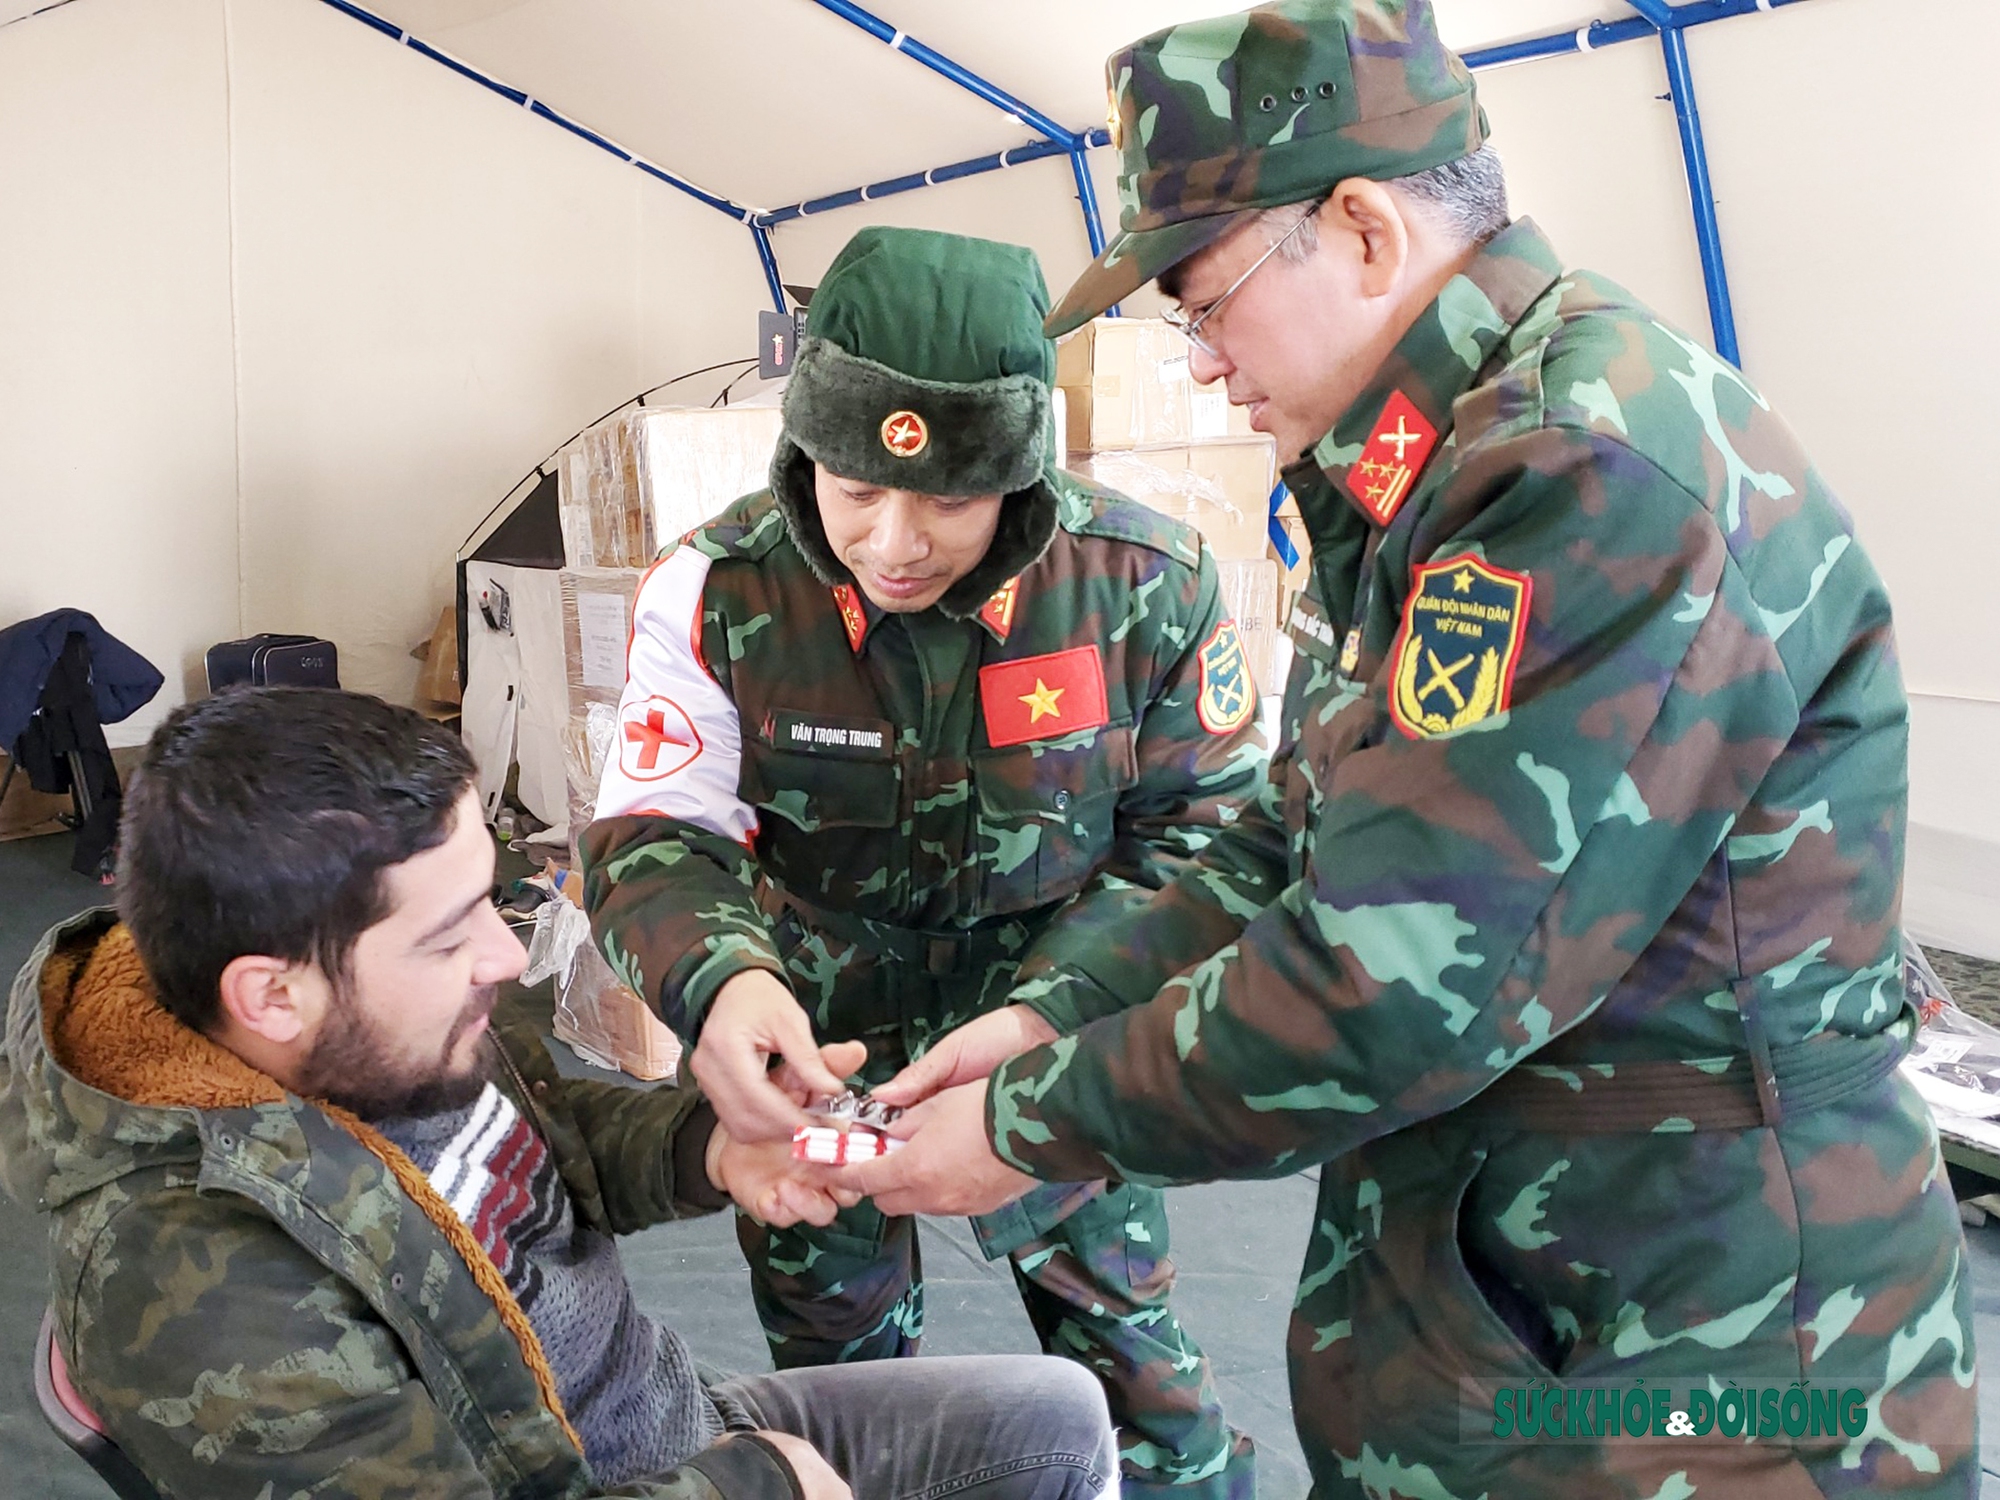  Bệnh nhân Comert được Tổ quân y Việt Nam cấp thuốc, hướng dẫn sử dụng và hẹn tái khám.